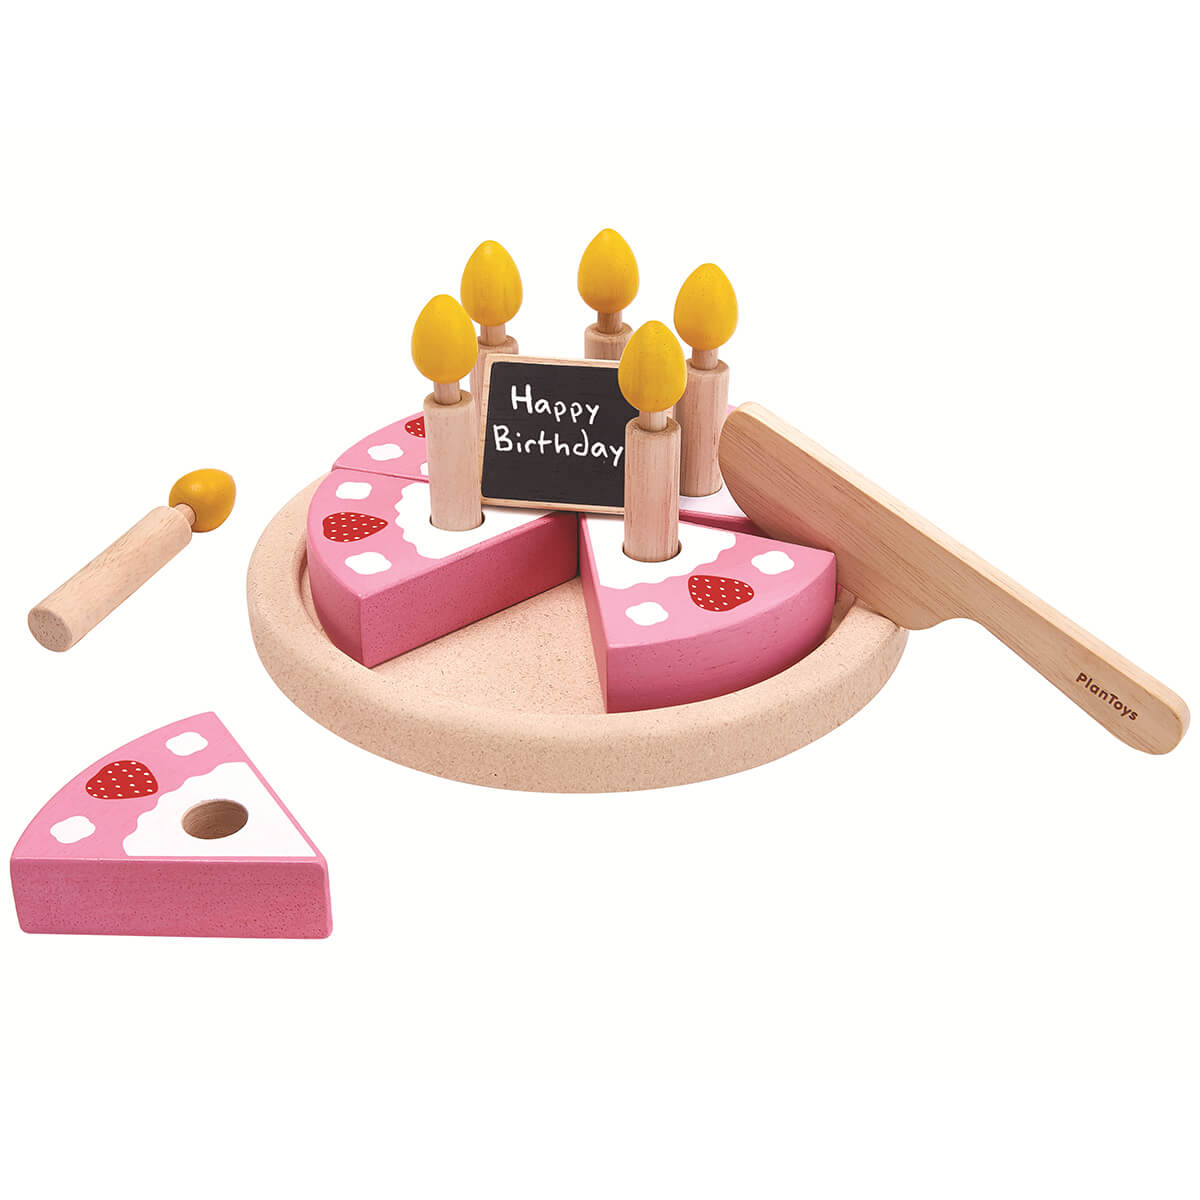 Plan Toys AW18 Birthday Cake Set Wooden Toy 1200x1200 ?v=1542030213